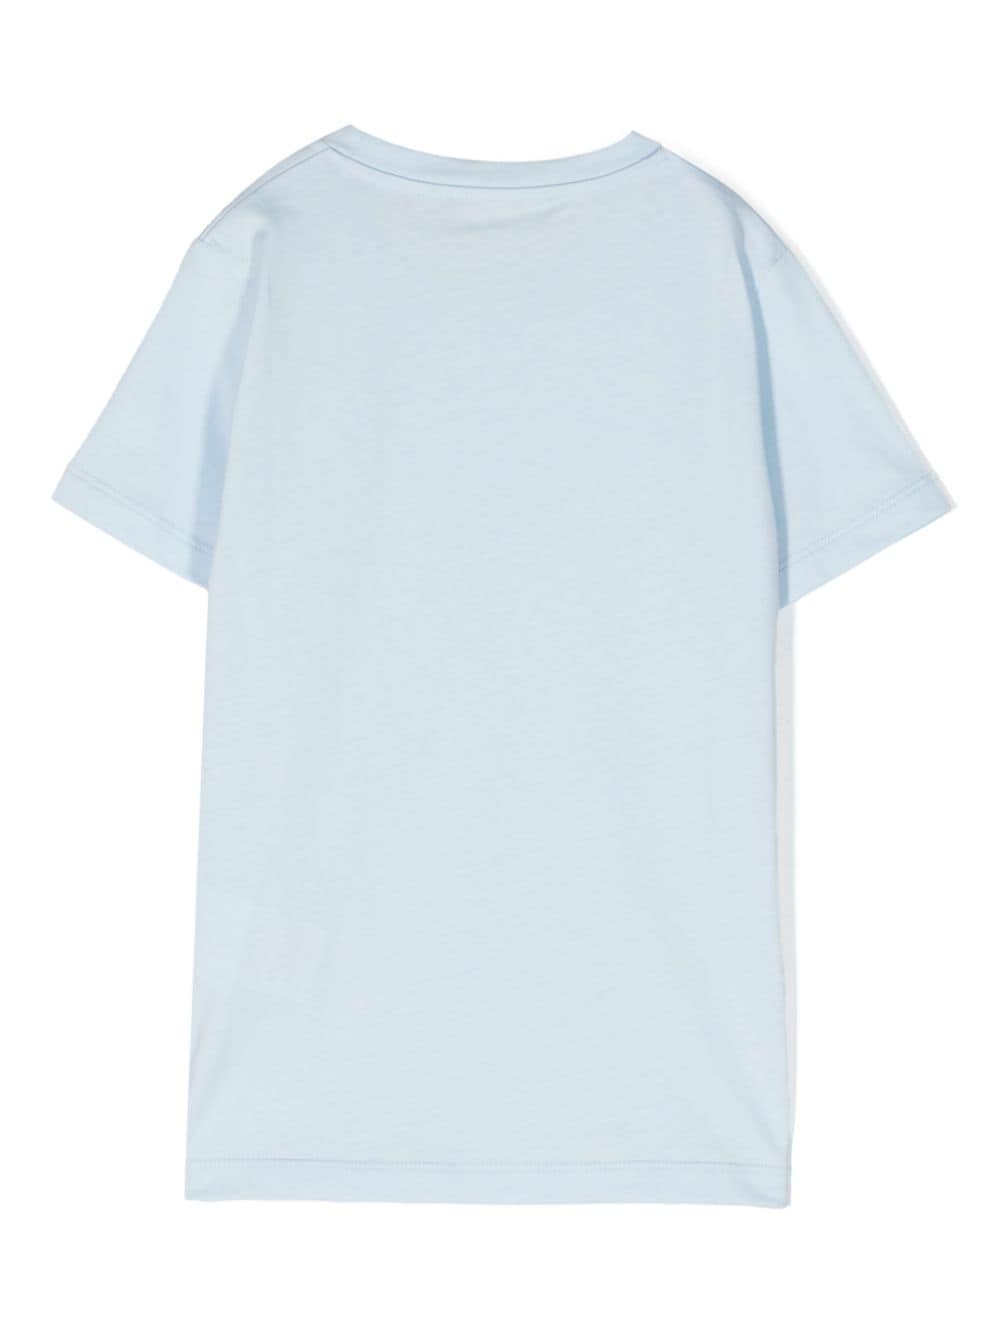 T-shirt celeste unisex